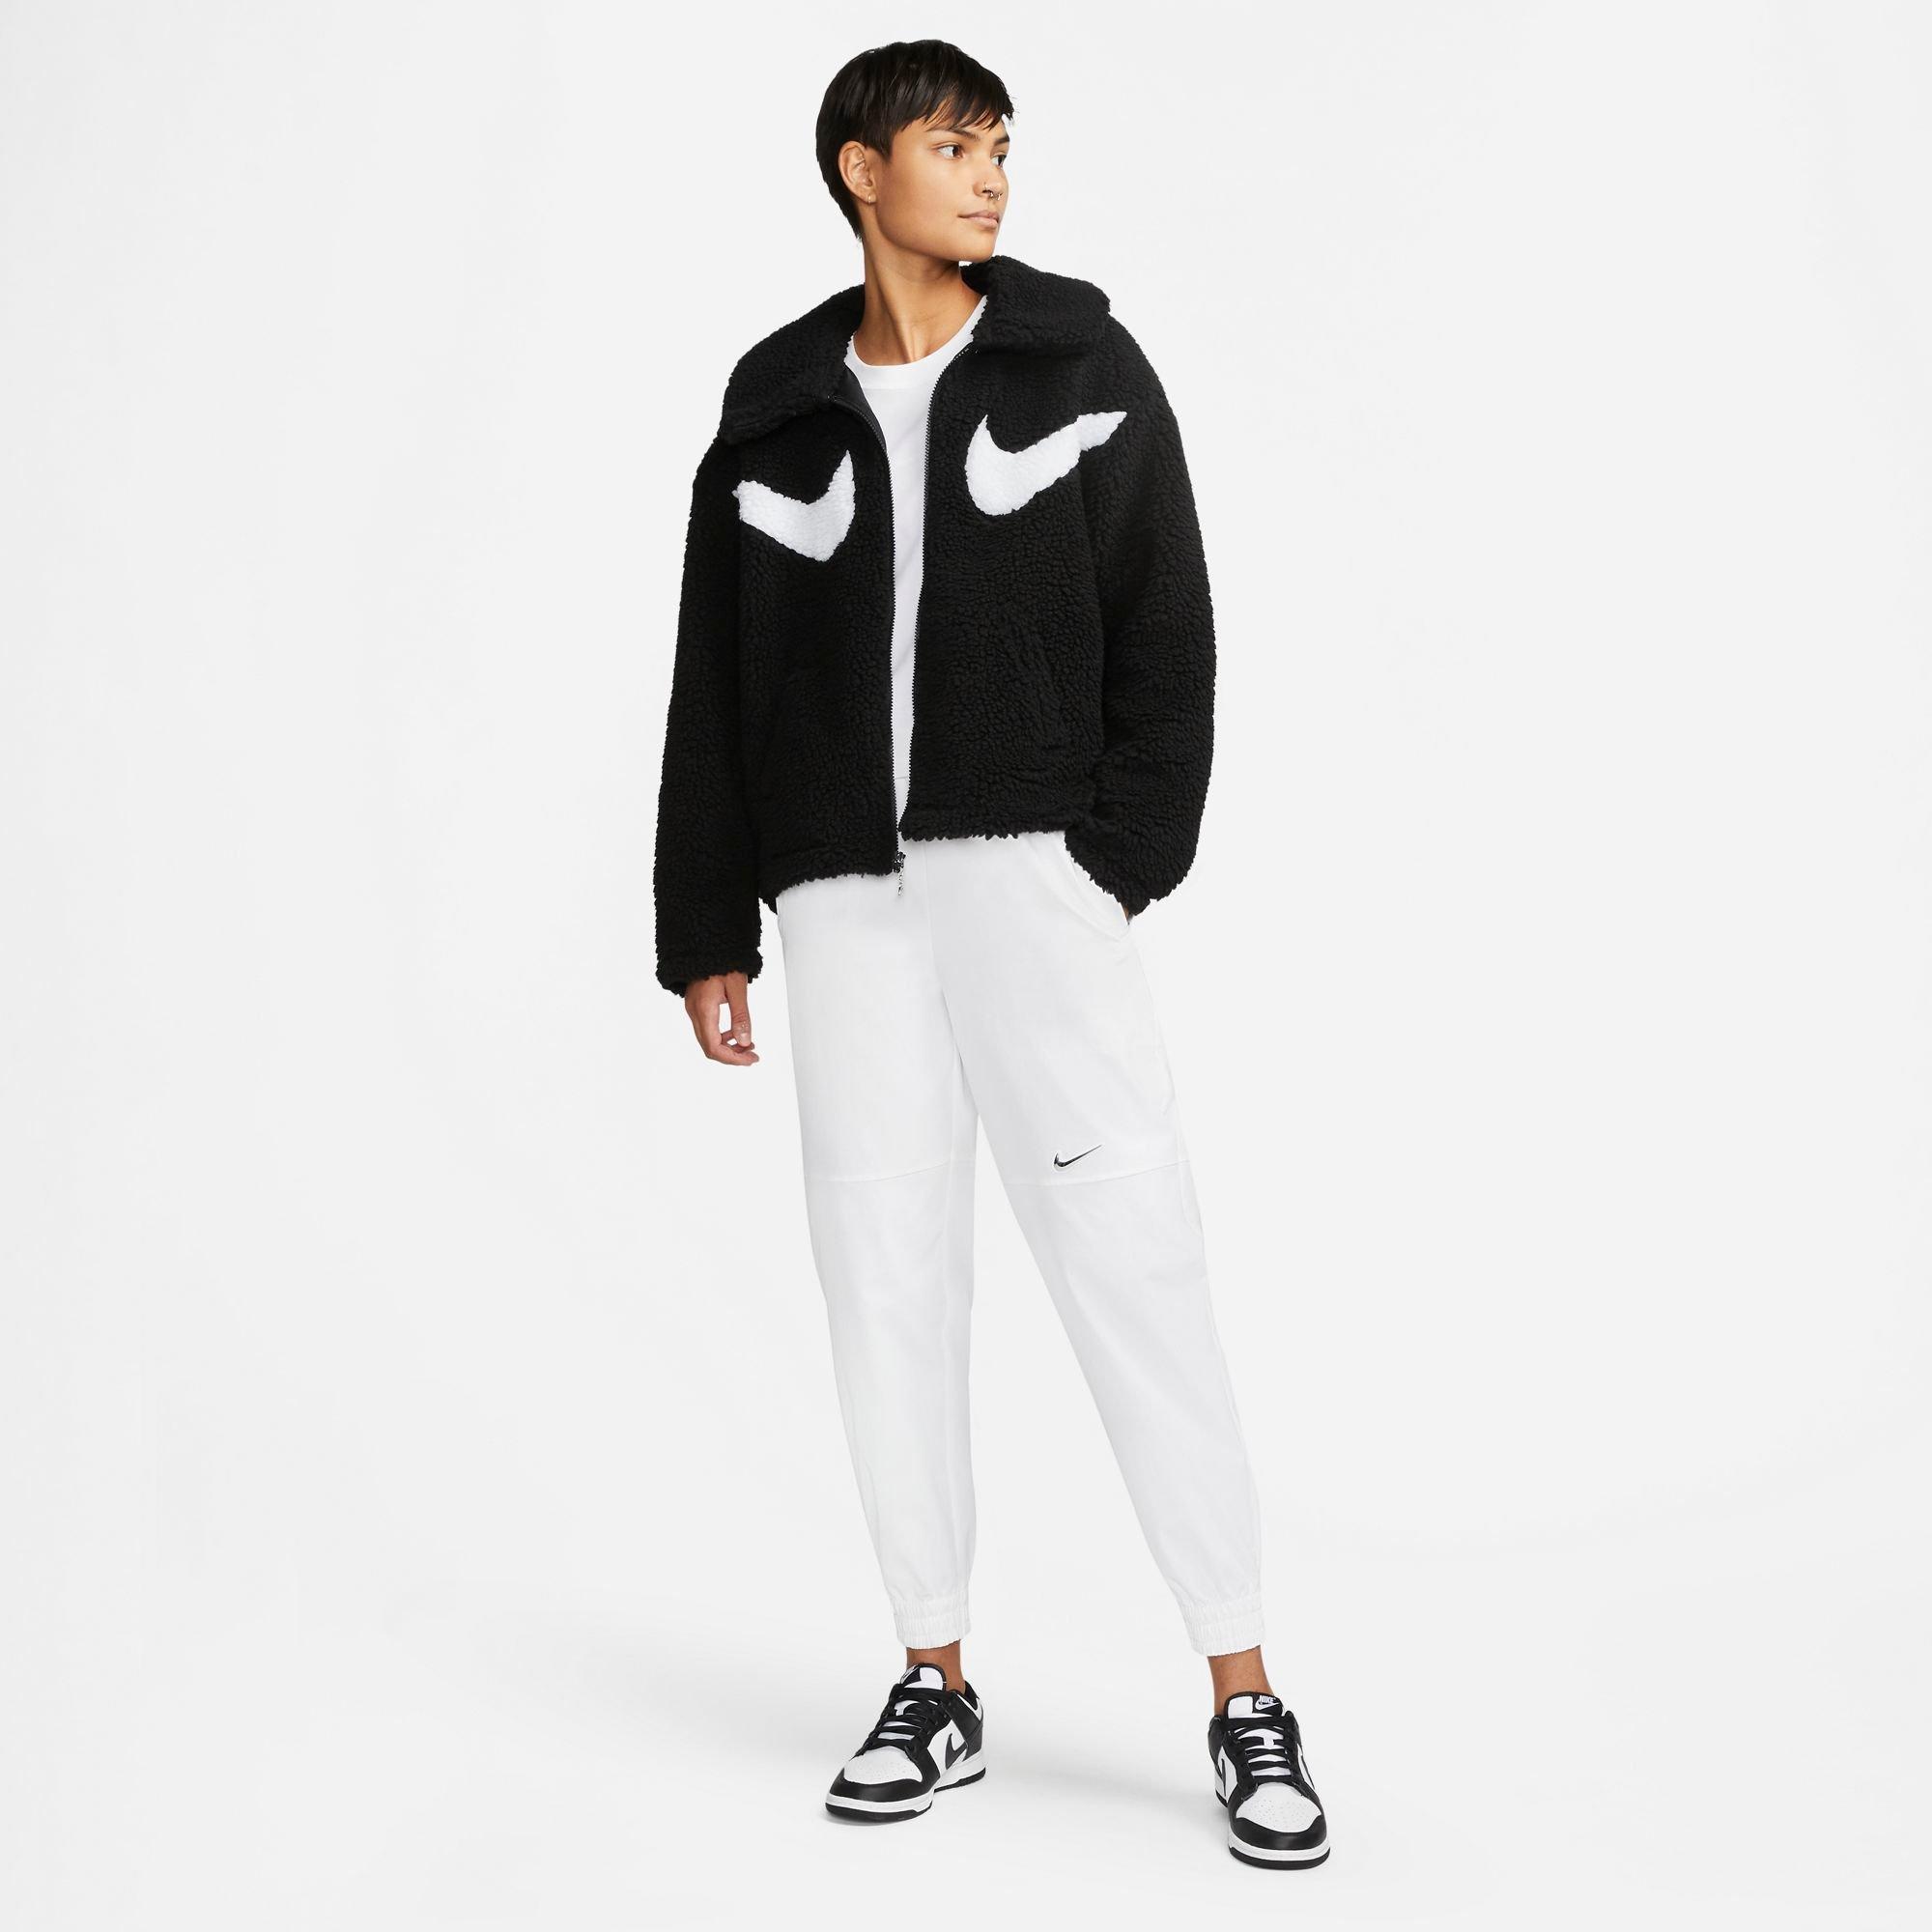 Nike Women's Sportswear Sherpa Full-Zip Jacket - Black/White